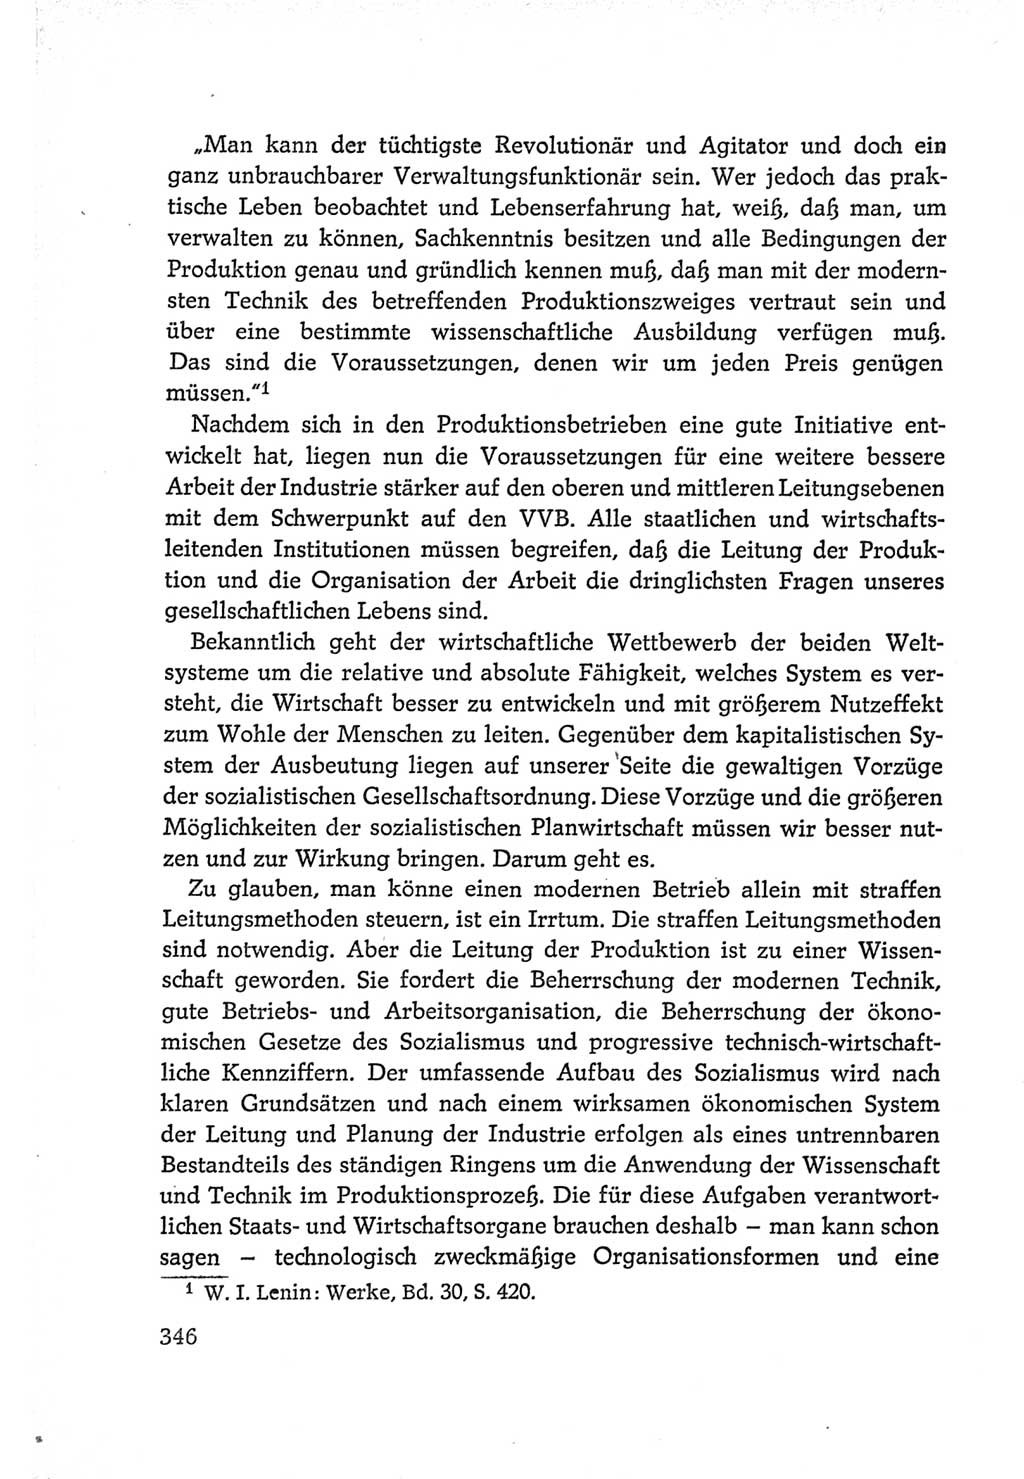 Protokoll der Verhandlungen des Ⅵ. Parteitages der Sozialistischen Einheitspartei Deutschlands (SED) [Deutsche Demokratische Republik (DDR)] 1963, Band Ⅰ, Seite 346 (Prot. Verh. Ⅵ. PT SED DDR 1963, Bd. Ⅰ, S. 346)